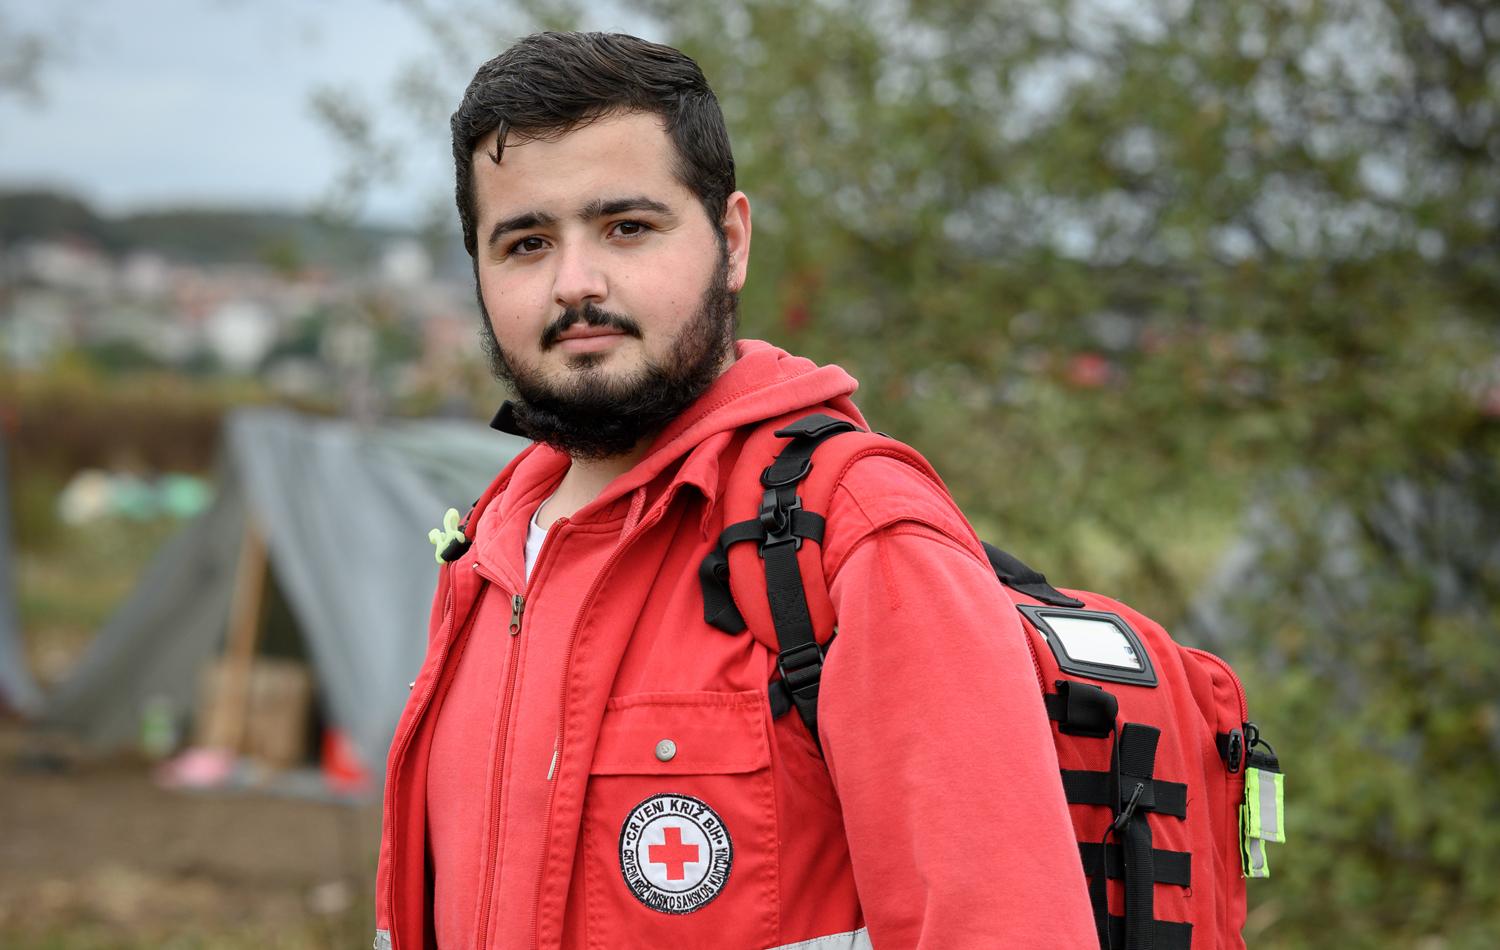 Un jeune homme portant un gilet de la Croix-Rouge polonaise regarde la caméra avec assurance.